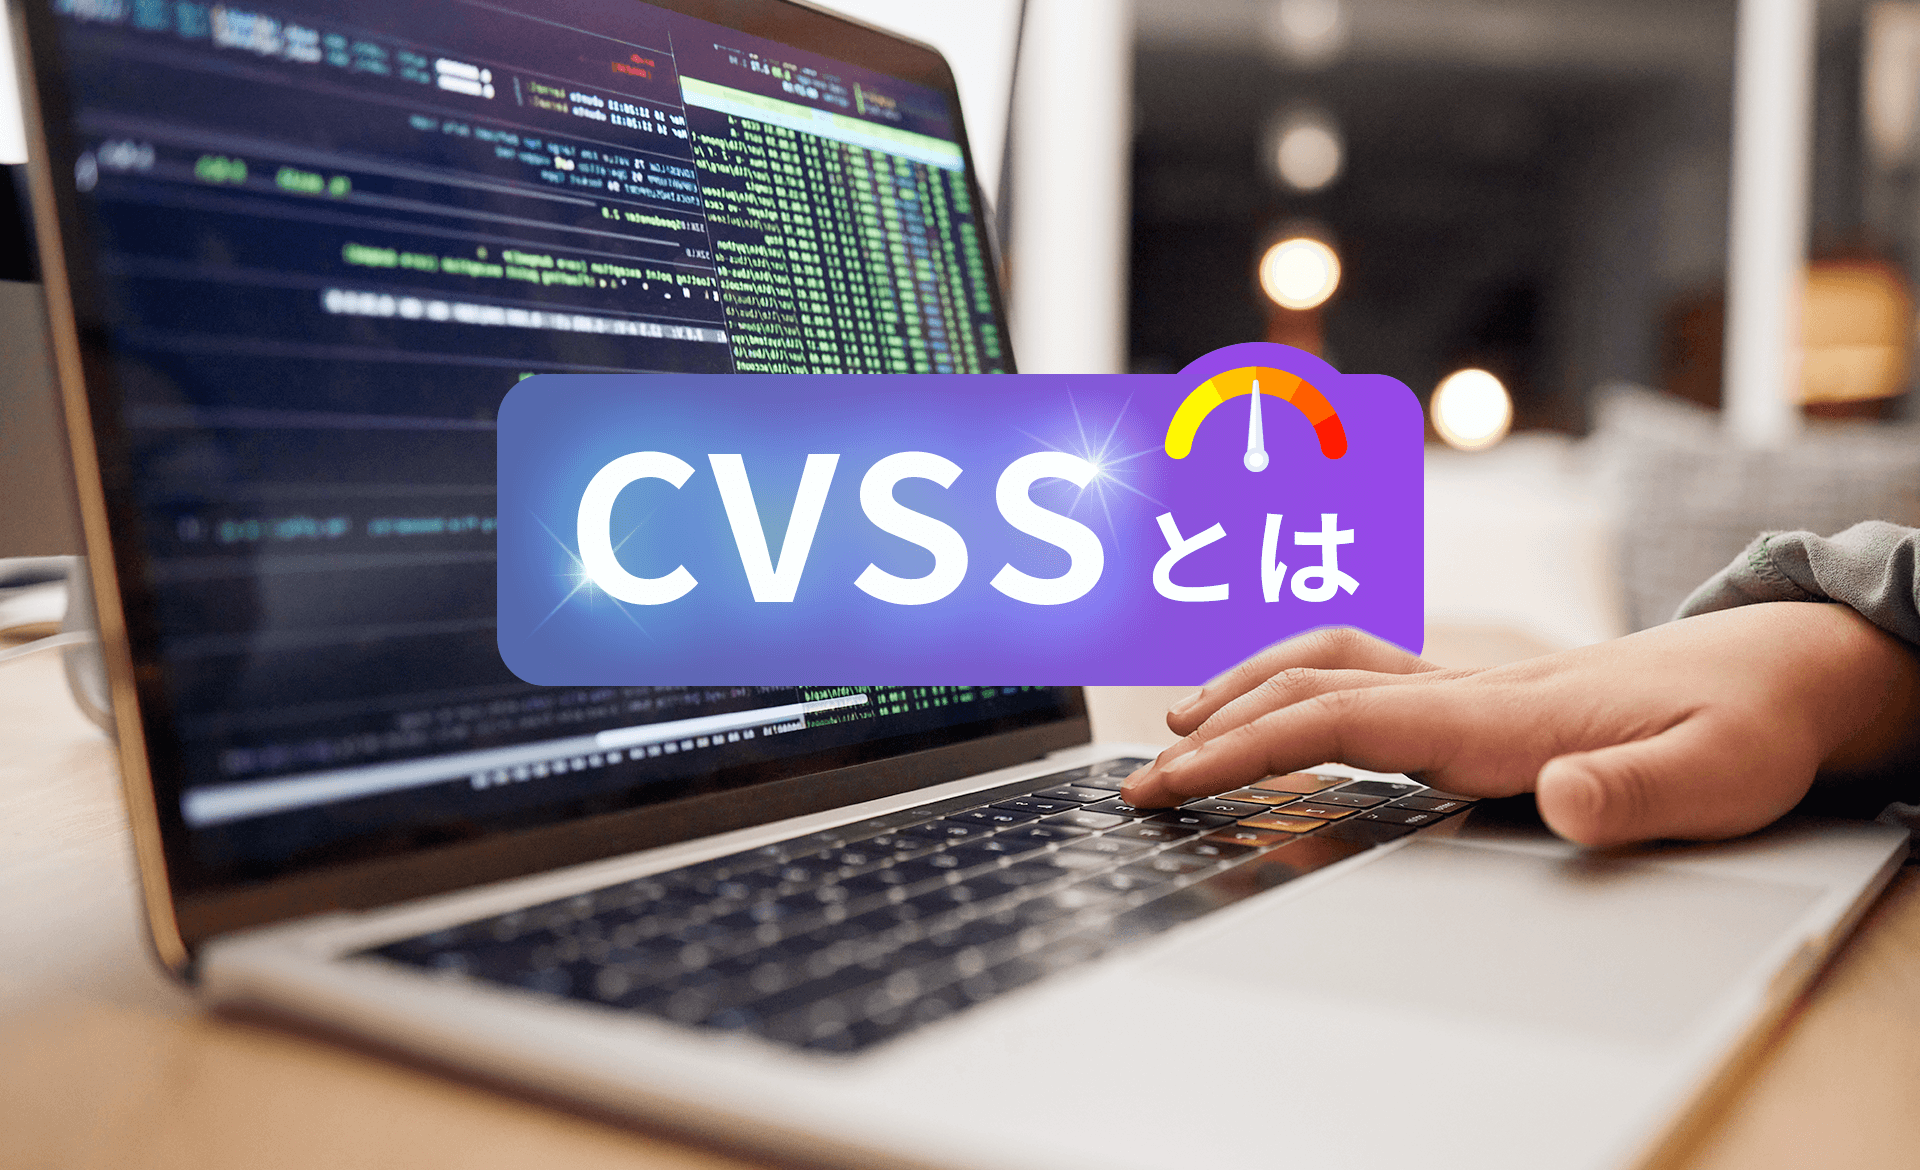 CVSSとは？最新CVSS v4.0の評価基準、点数の計算方法について解説